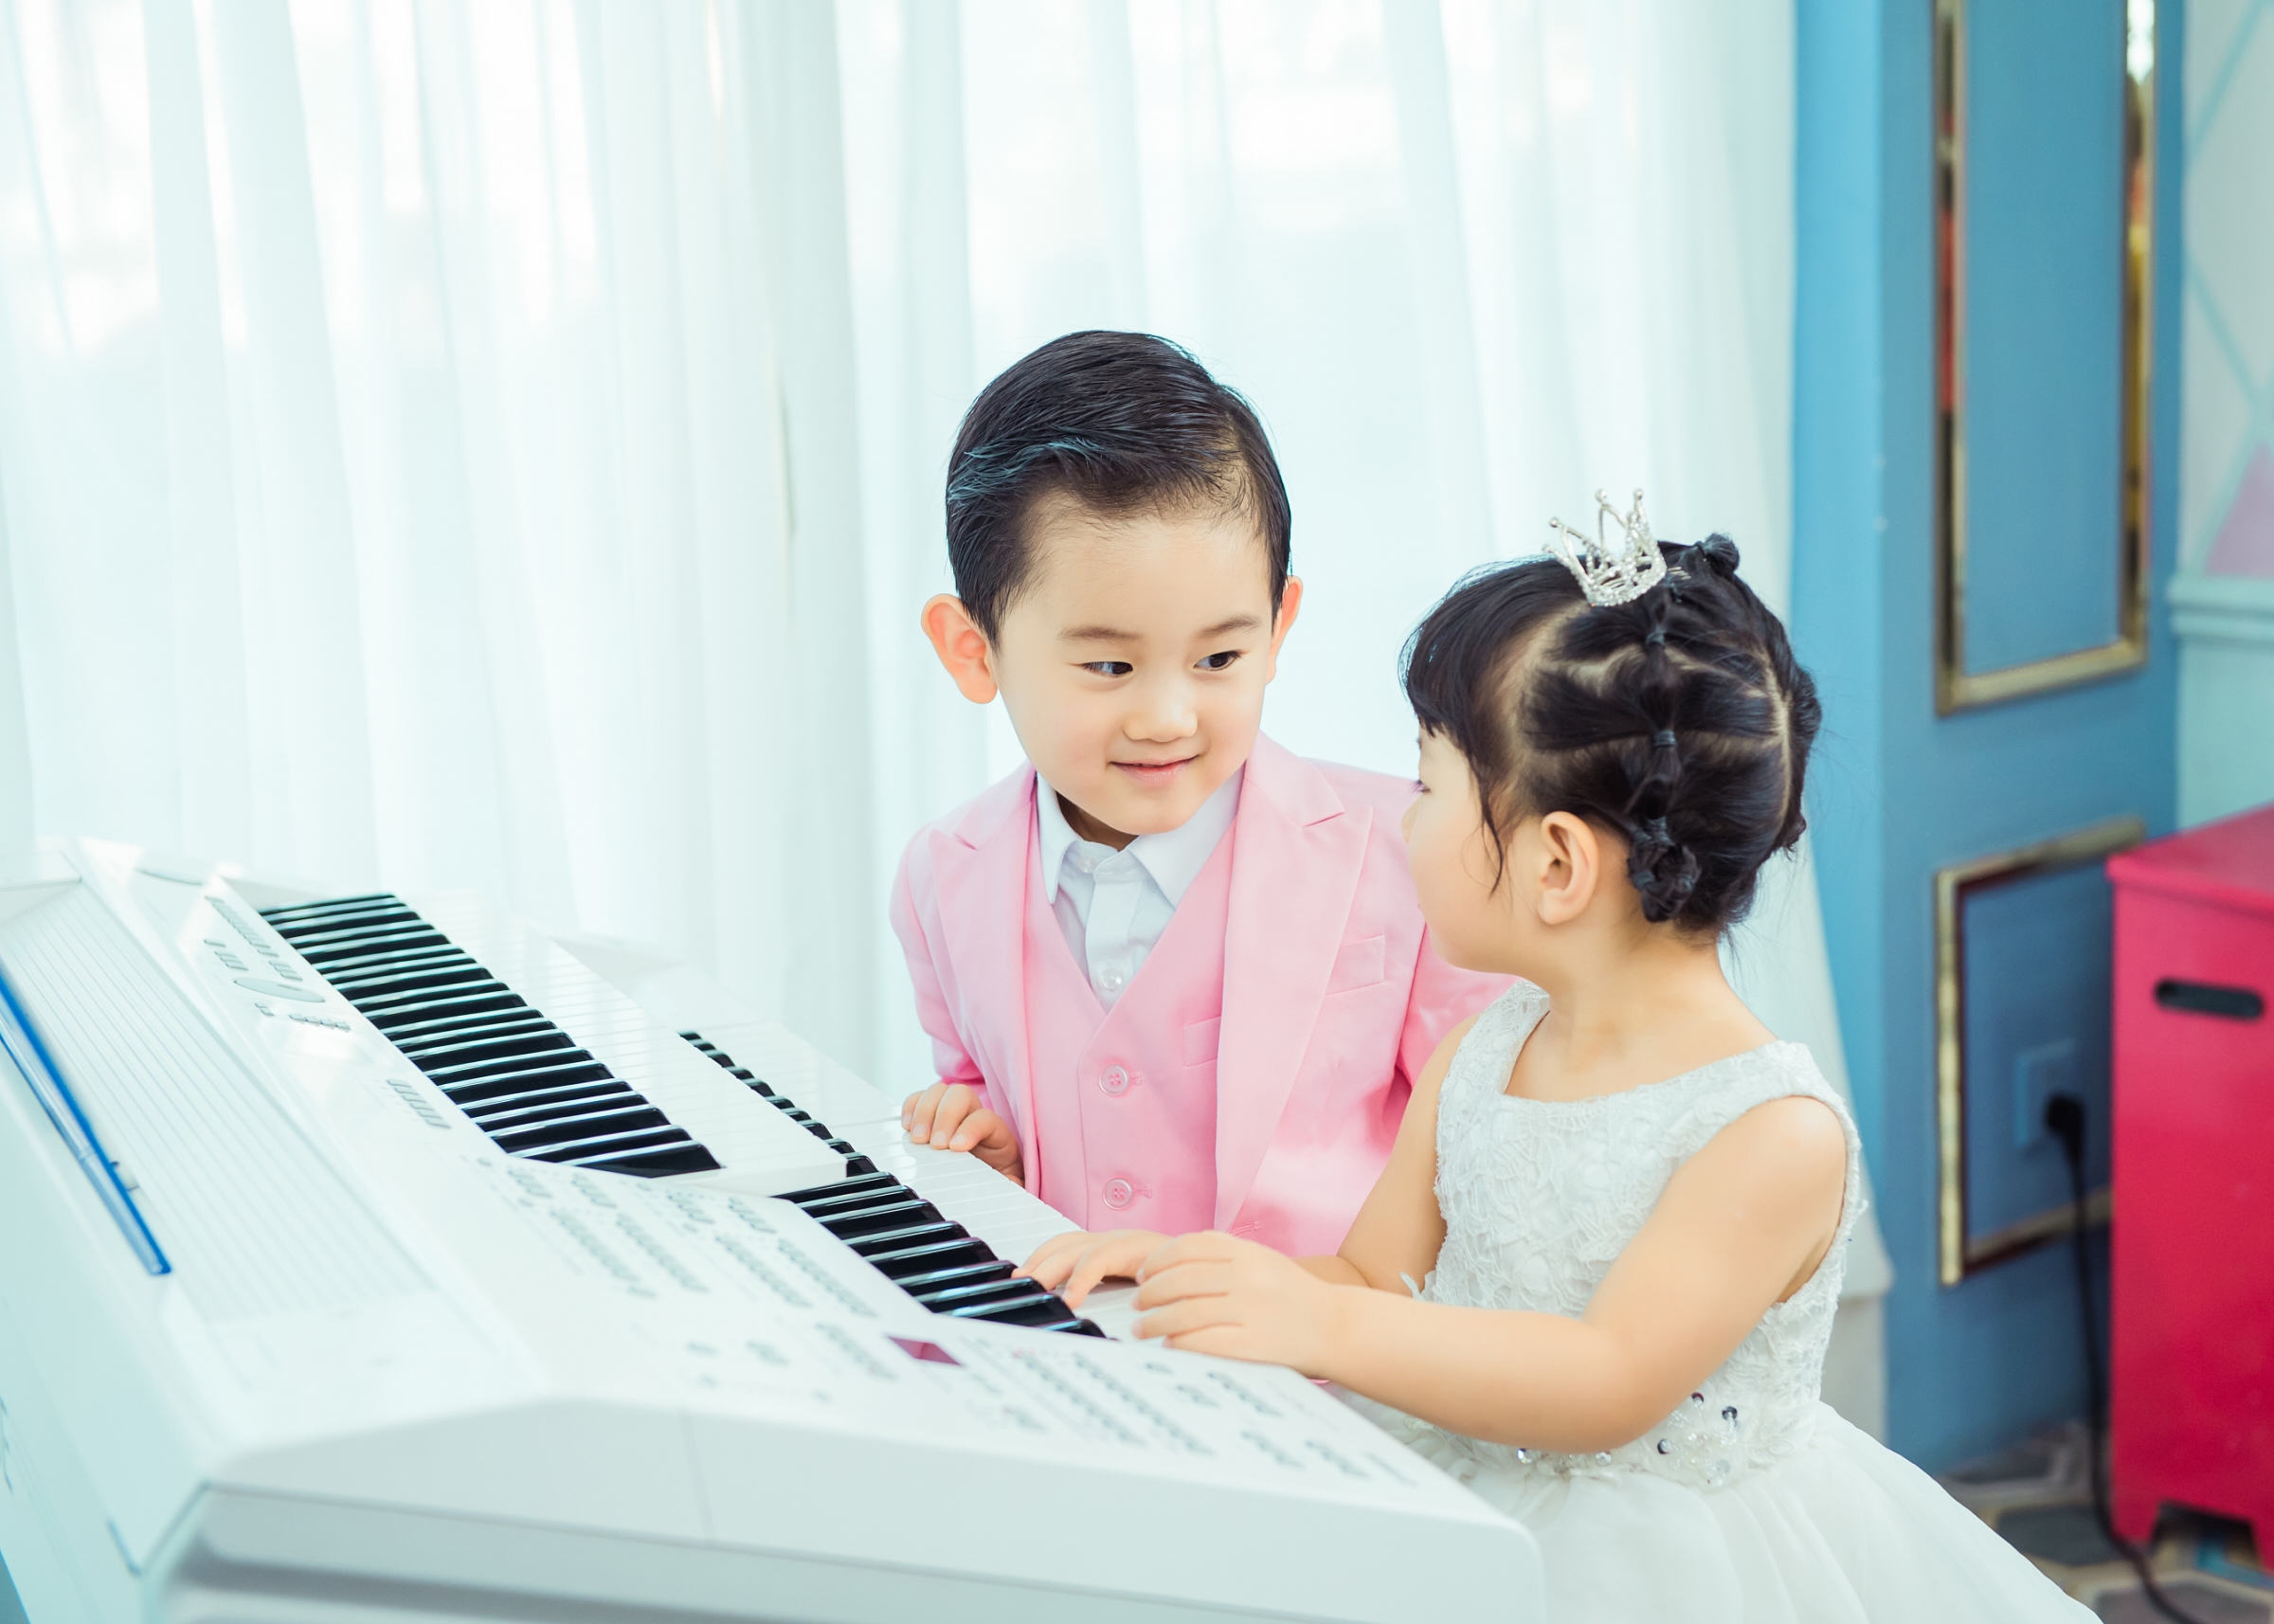 幼儿,音乐教育,对,都有,哪些,好处,幼儿,音乐教育,是,按 . 幼儿音乐教育对幼儿都有哪些好处？